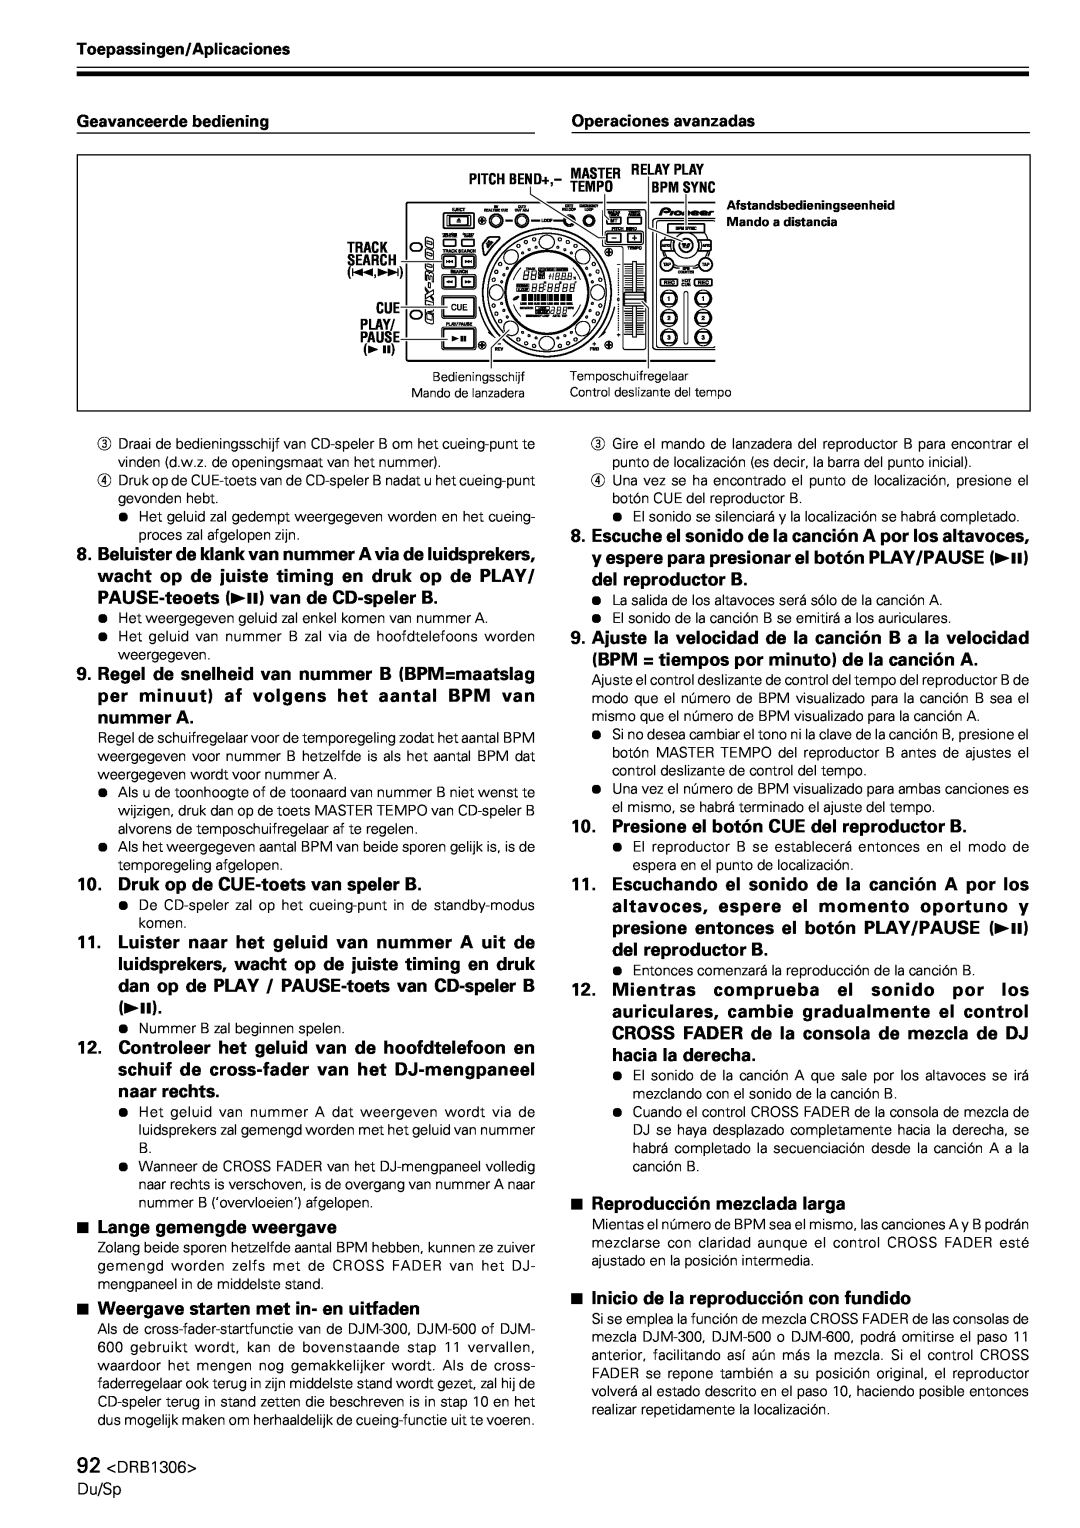 Pioneer CMX-3000 operating instructions Presione el botón CUE del reproductor B 